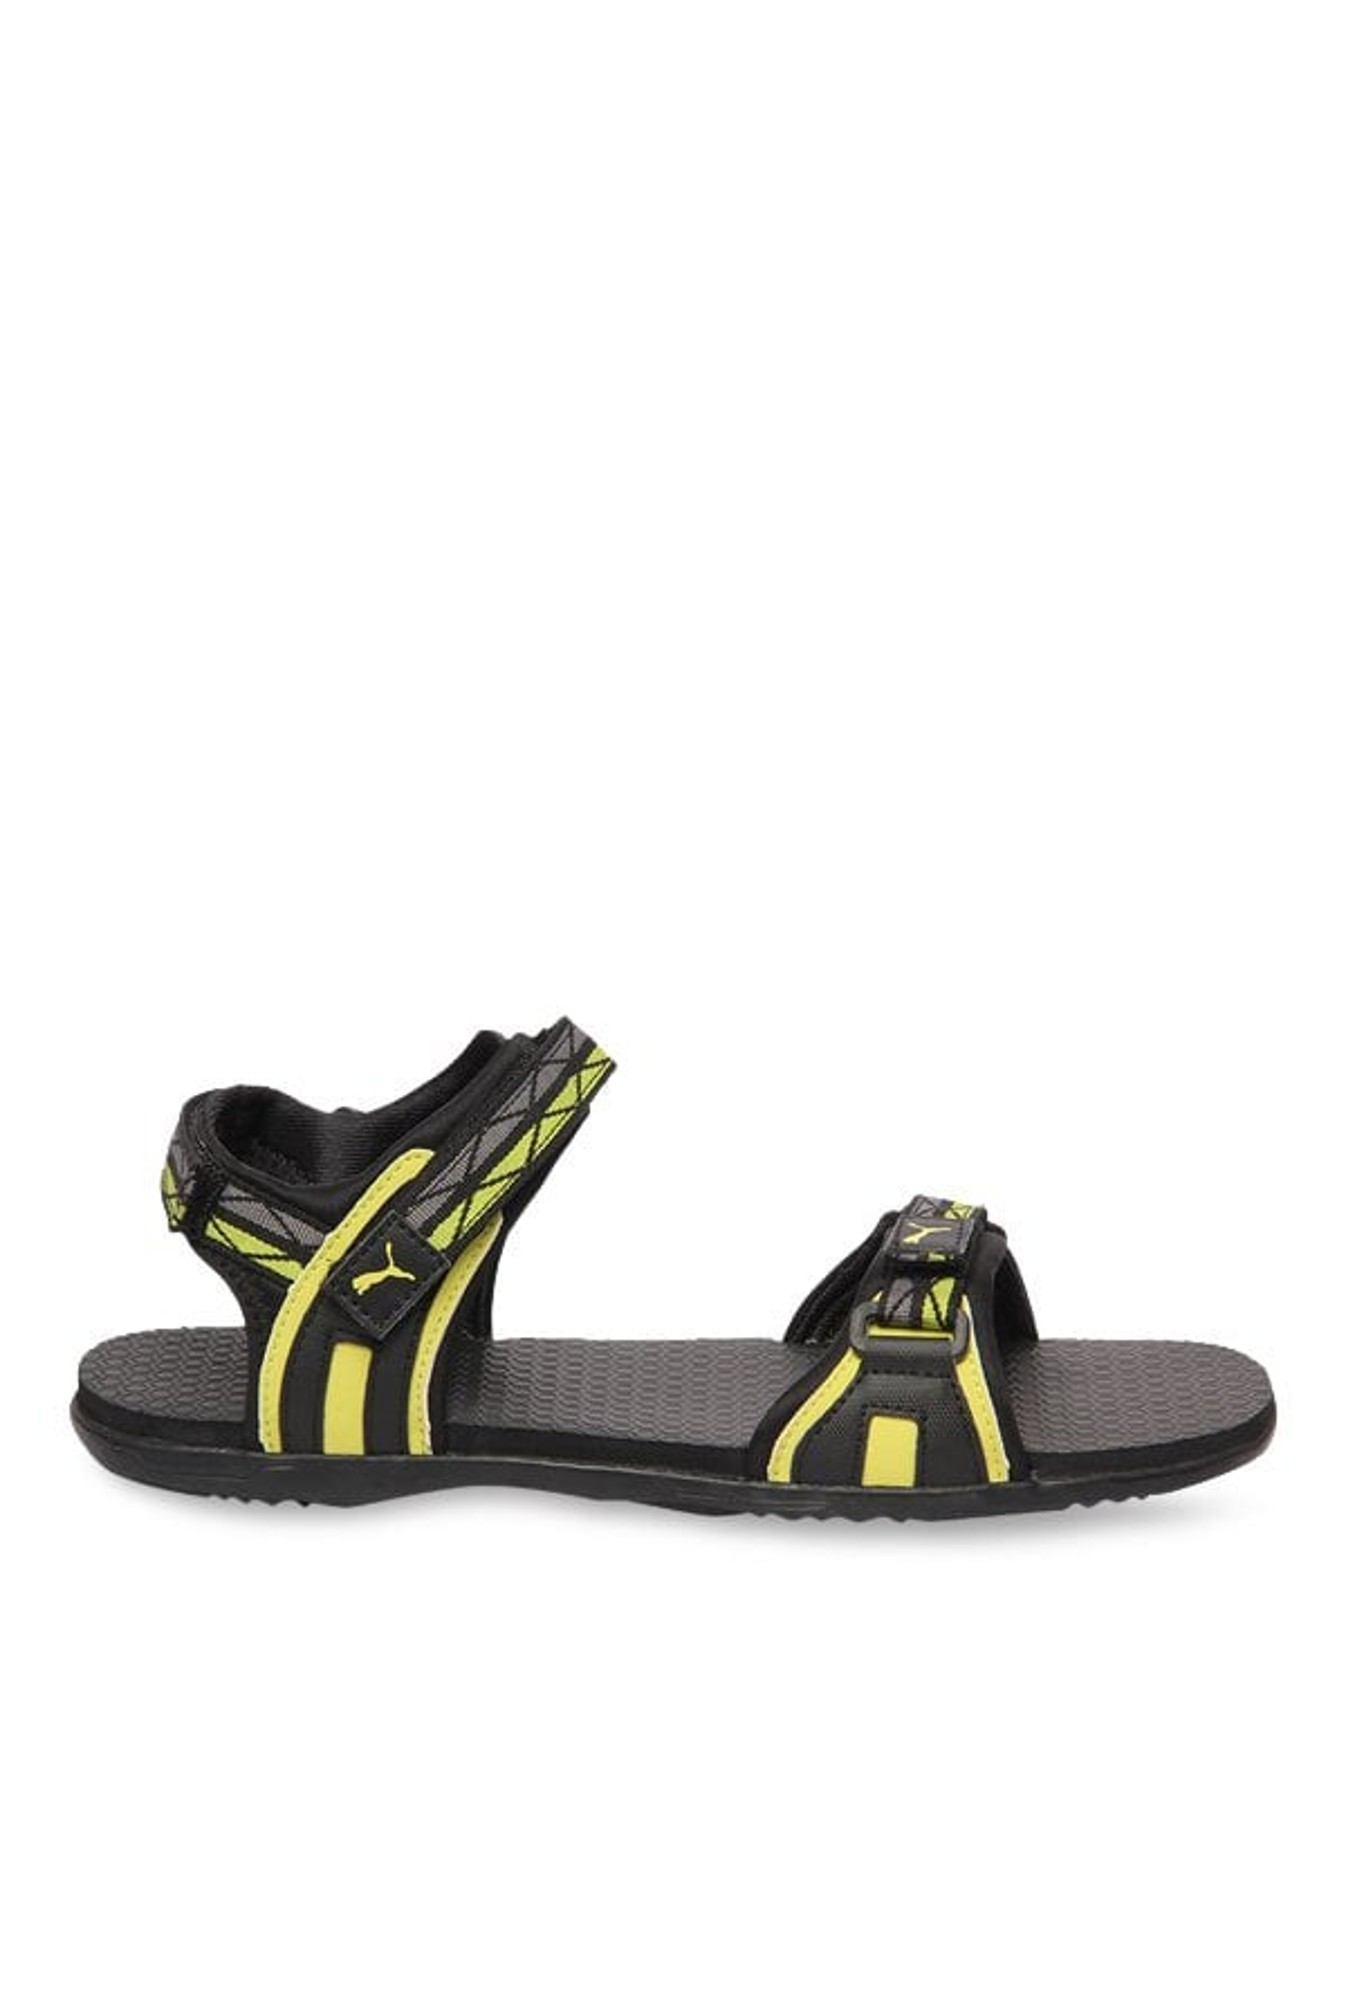 puma nova sandals yellow